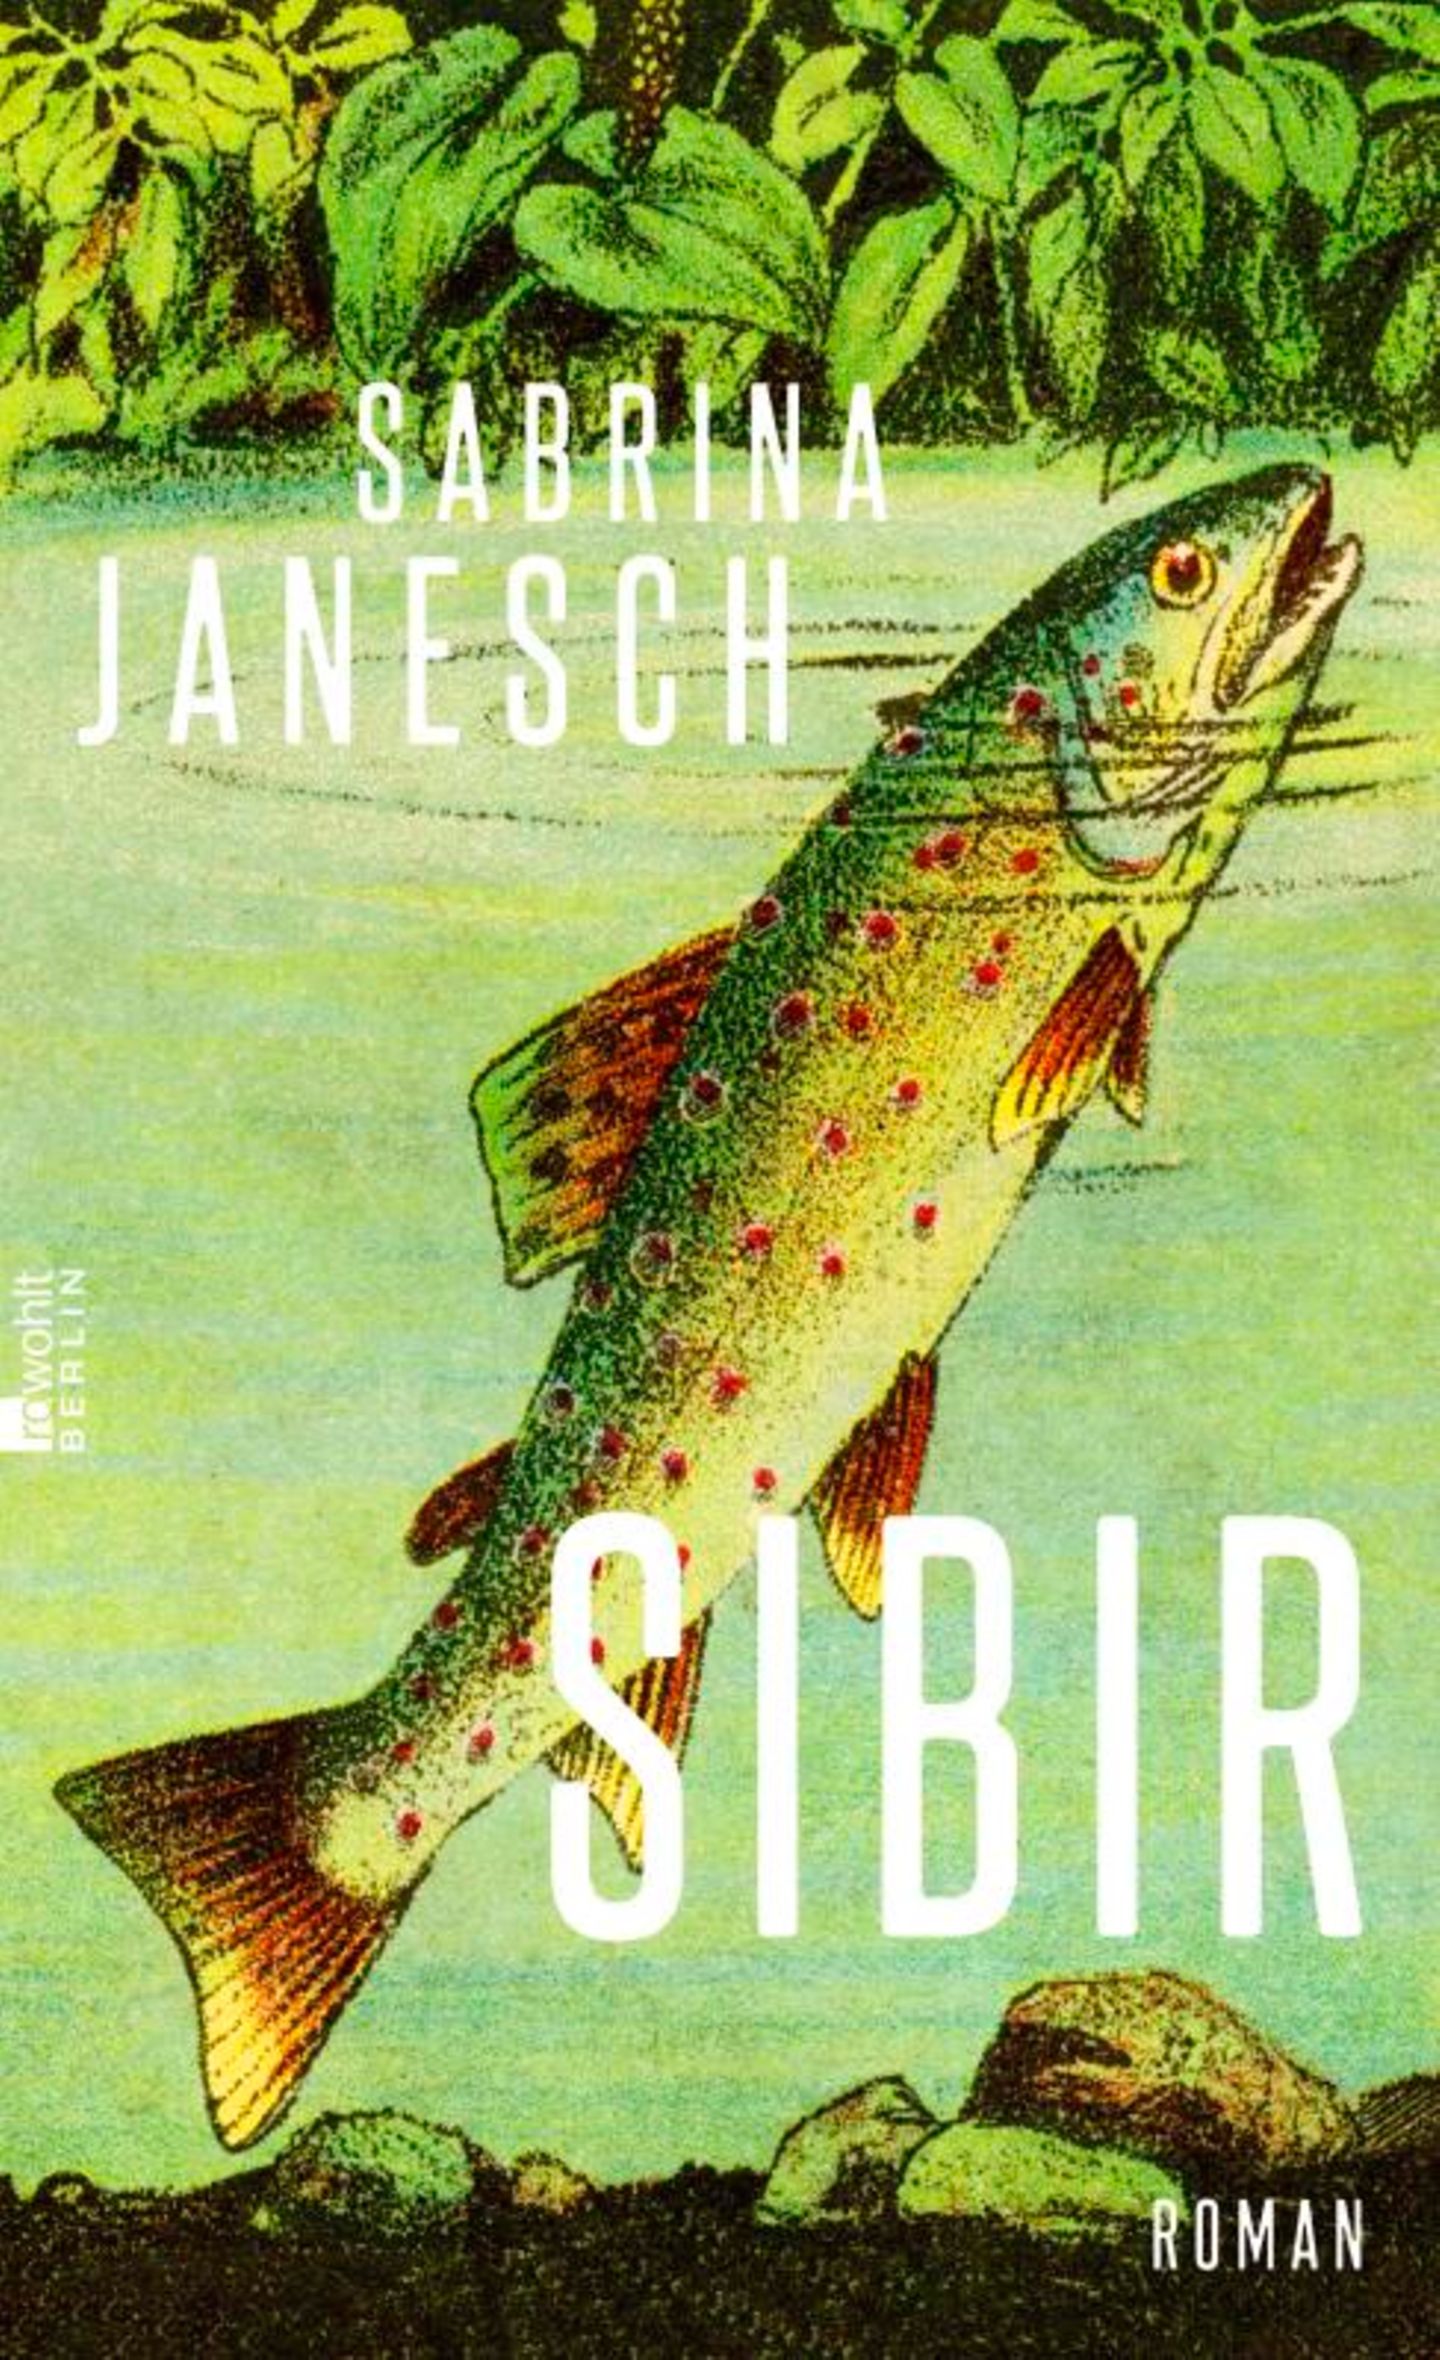 Buchtipps der Redaktion: Buchcover "Sibir"